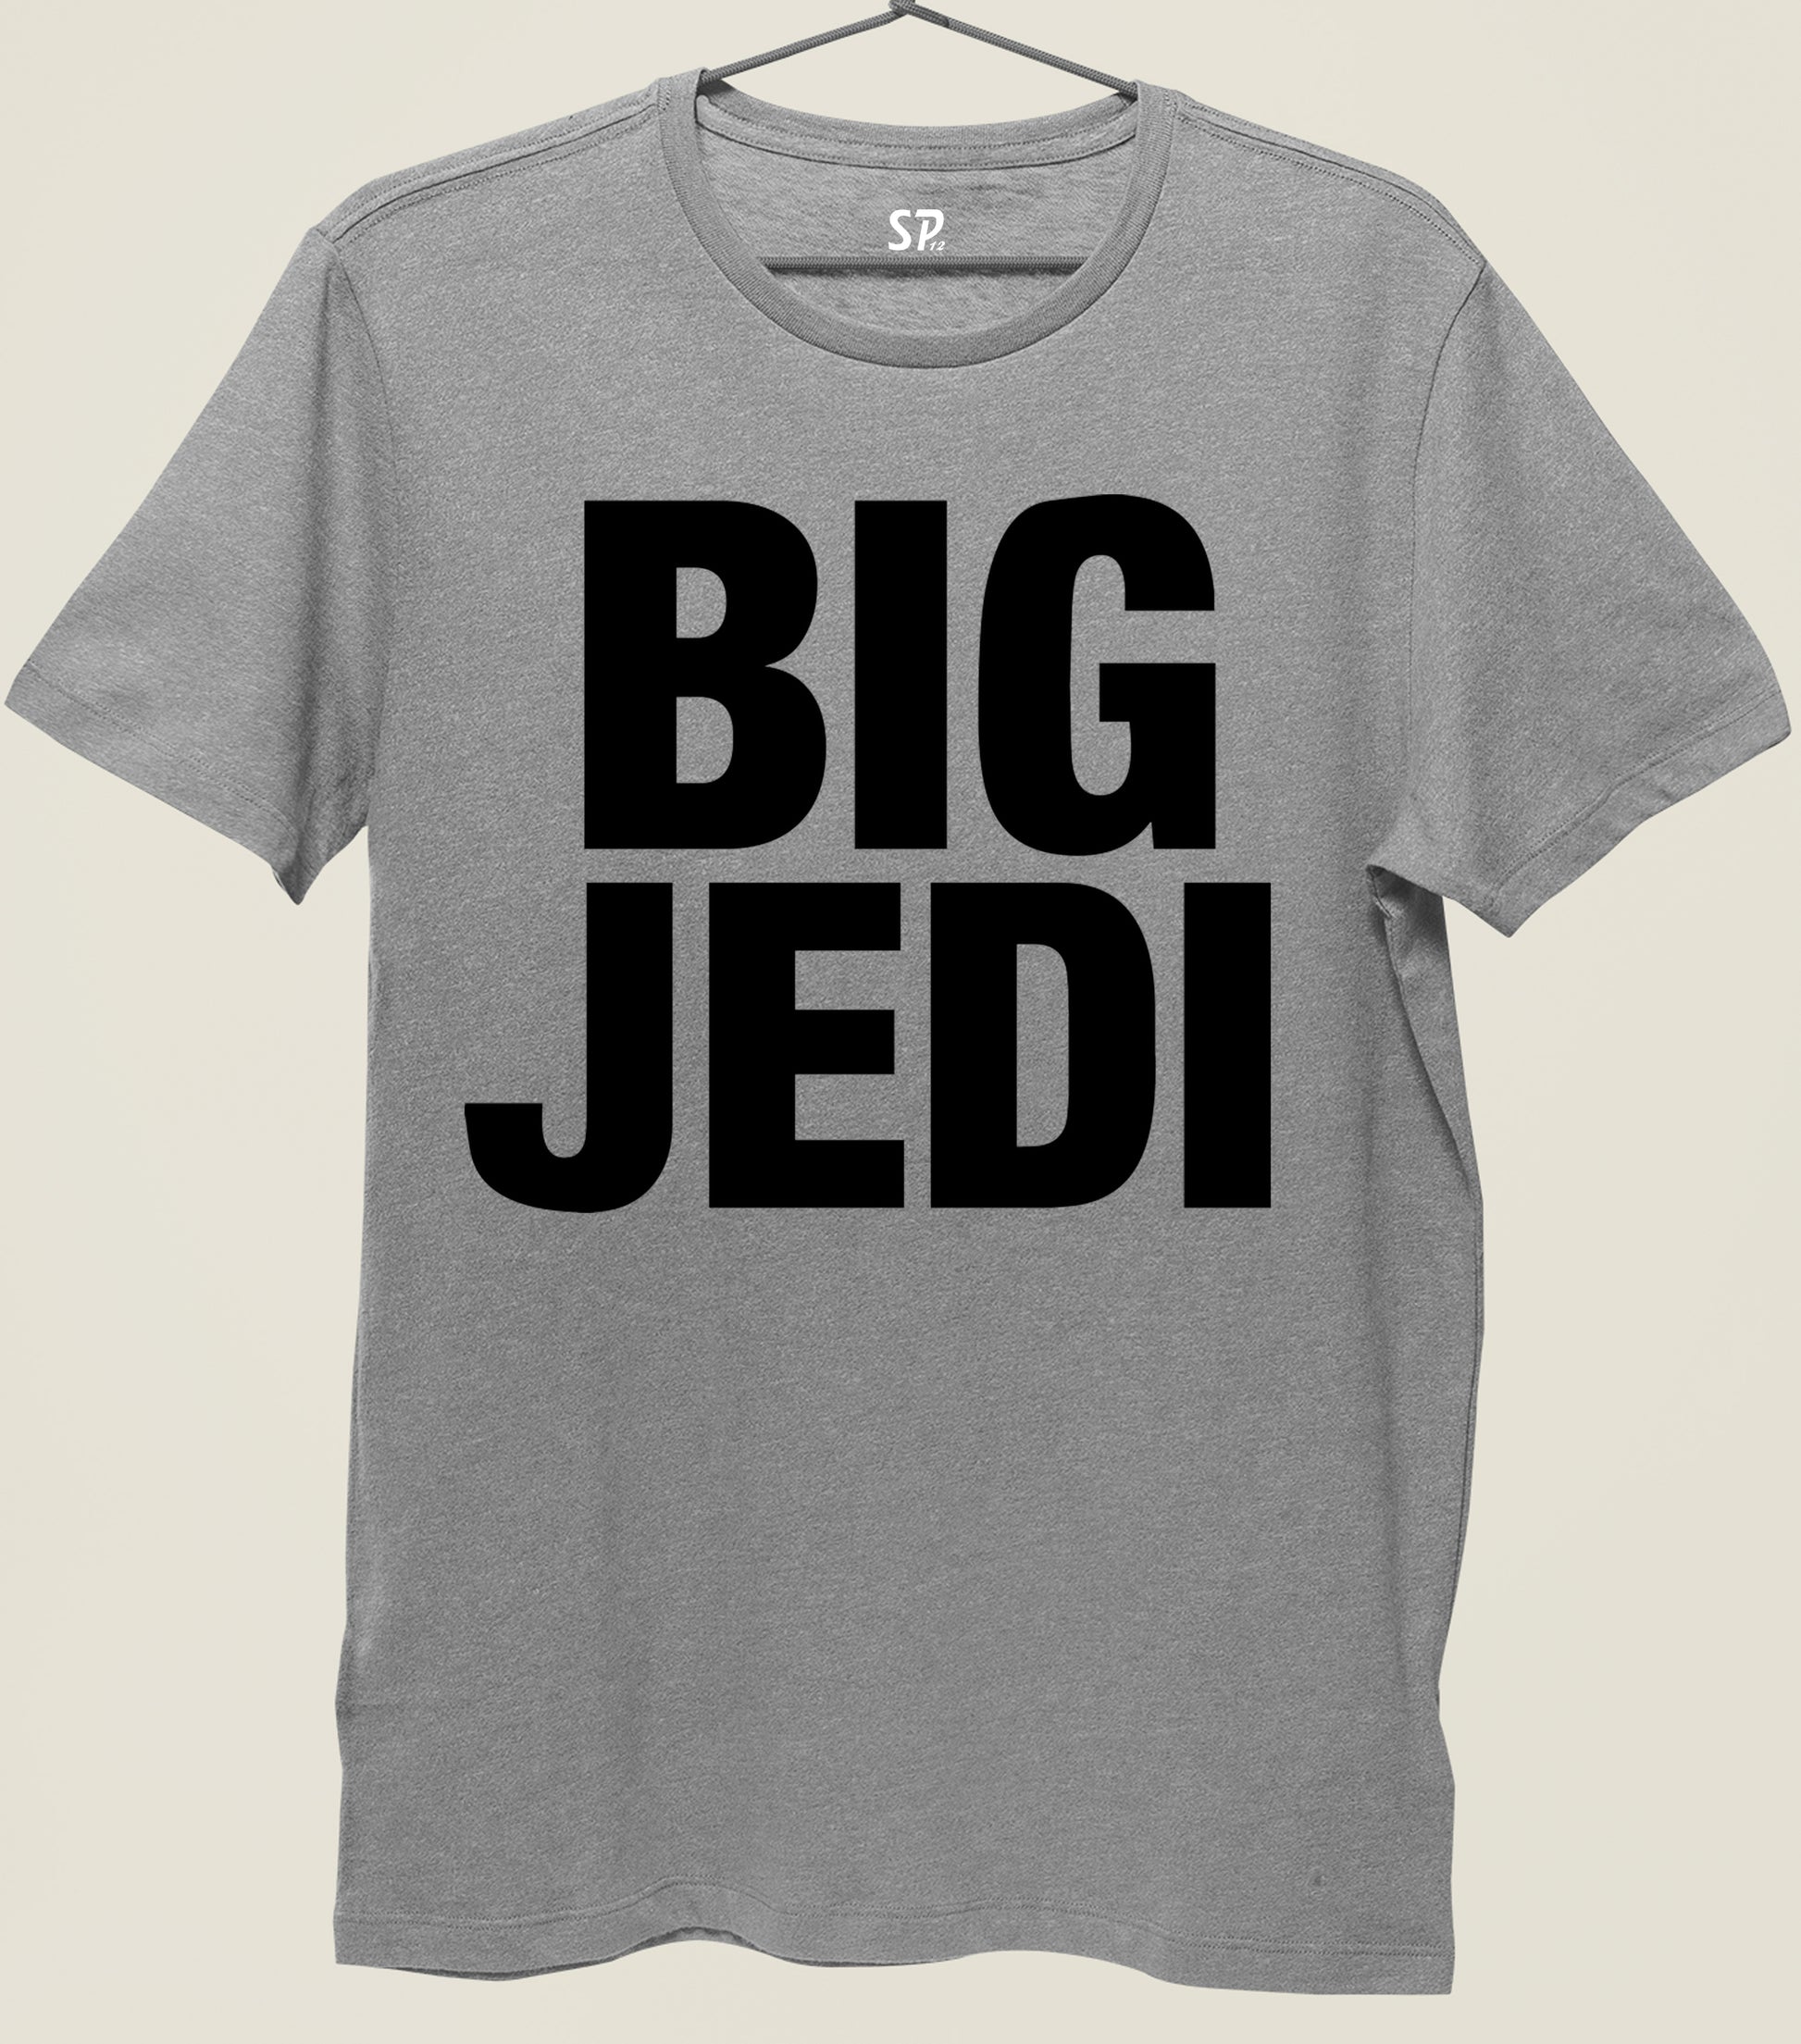 Big Jedi Funny Slogan T shirt